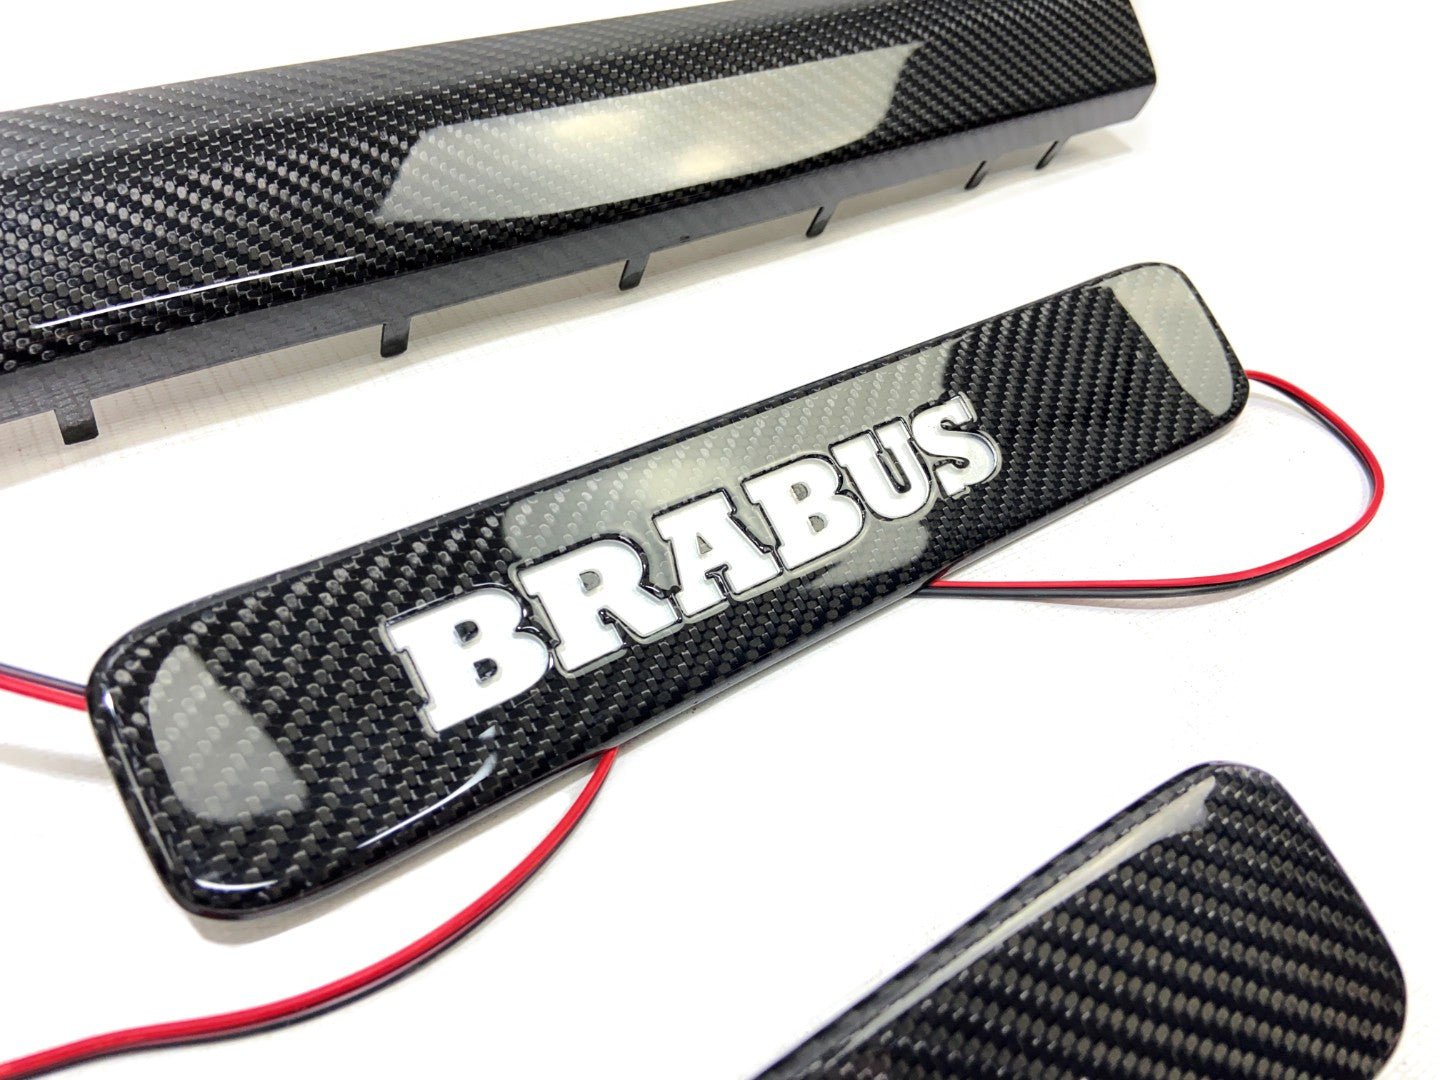 Kohlefaser-LED-beleuchtete Brabus-Einstiegsleisten, 5 Stück, für Mercedes-Benz W463A W464 G-Klasse